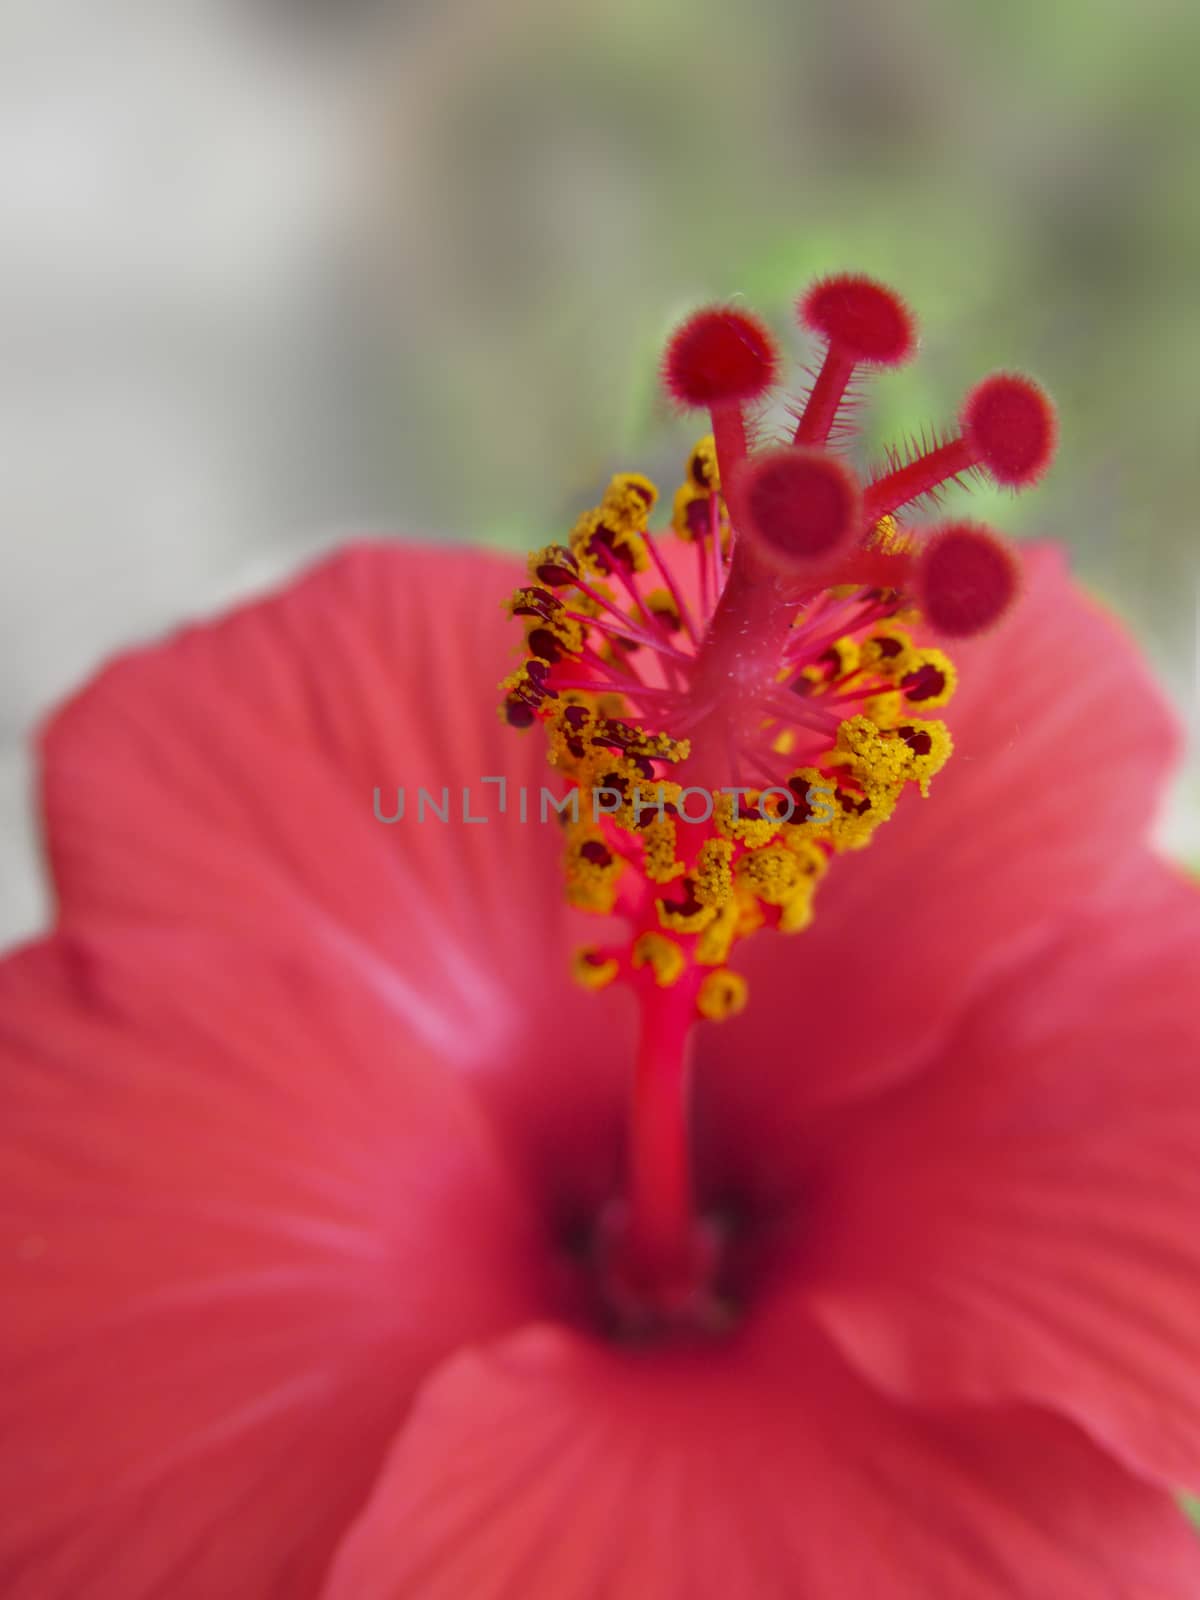 Red hibiscus flower by drpgayen